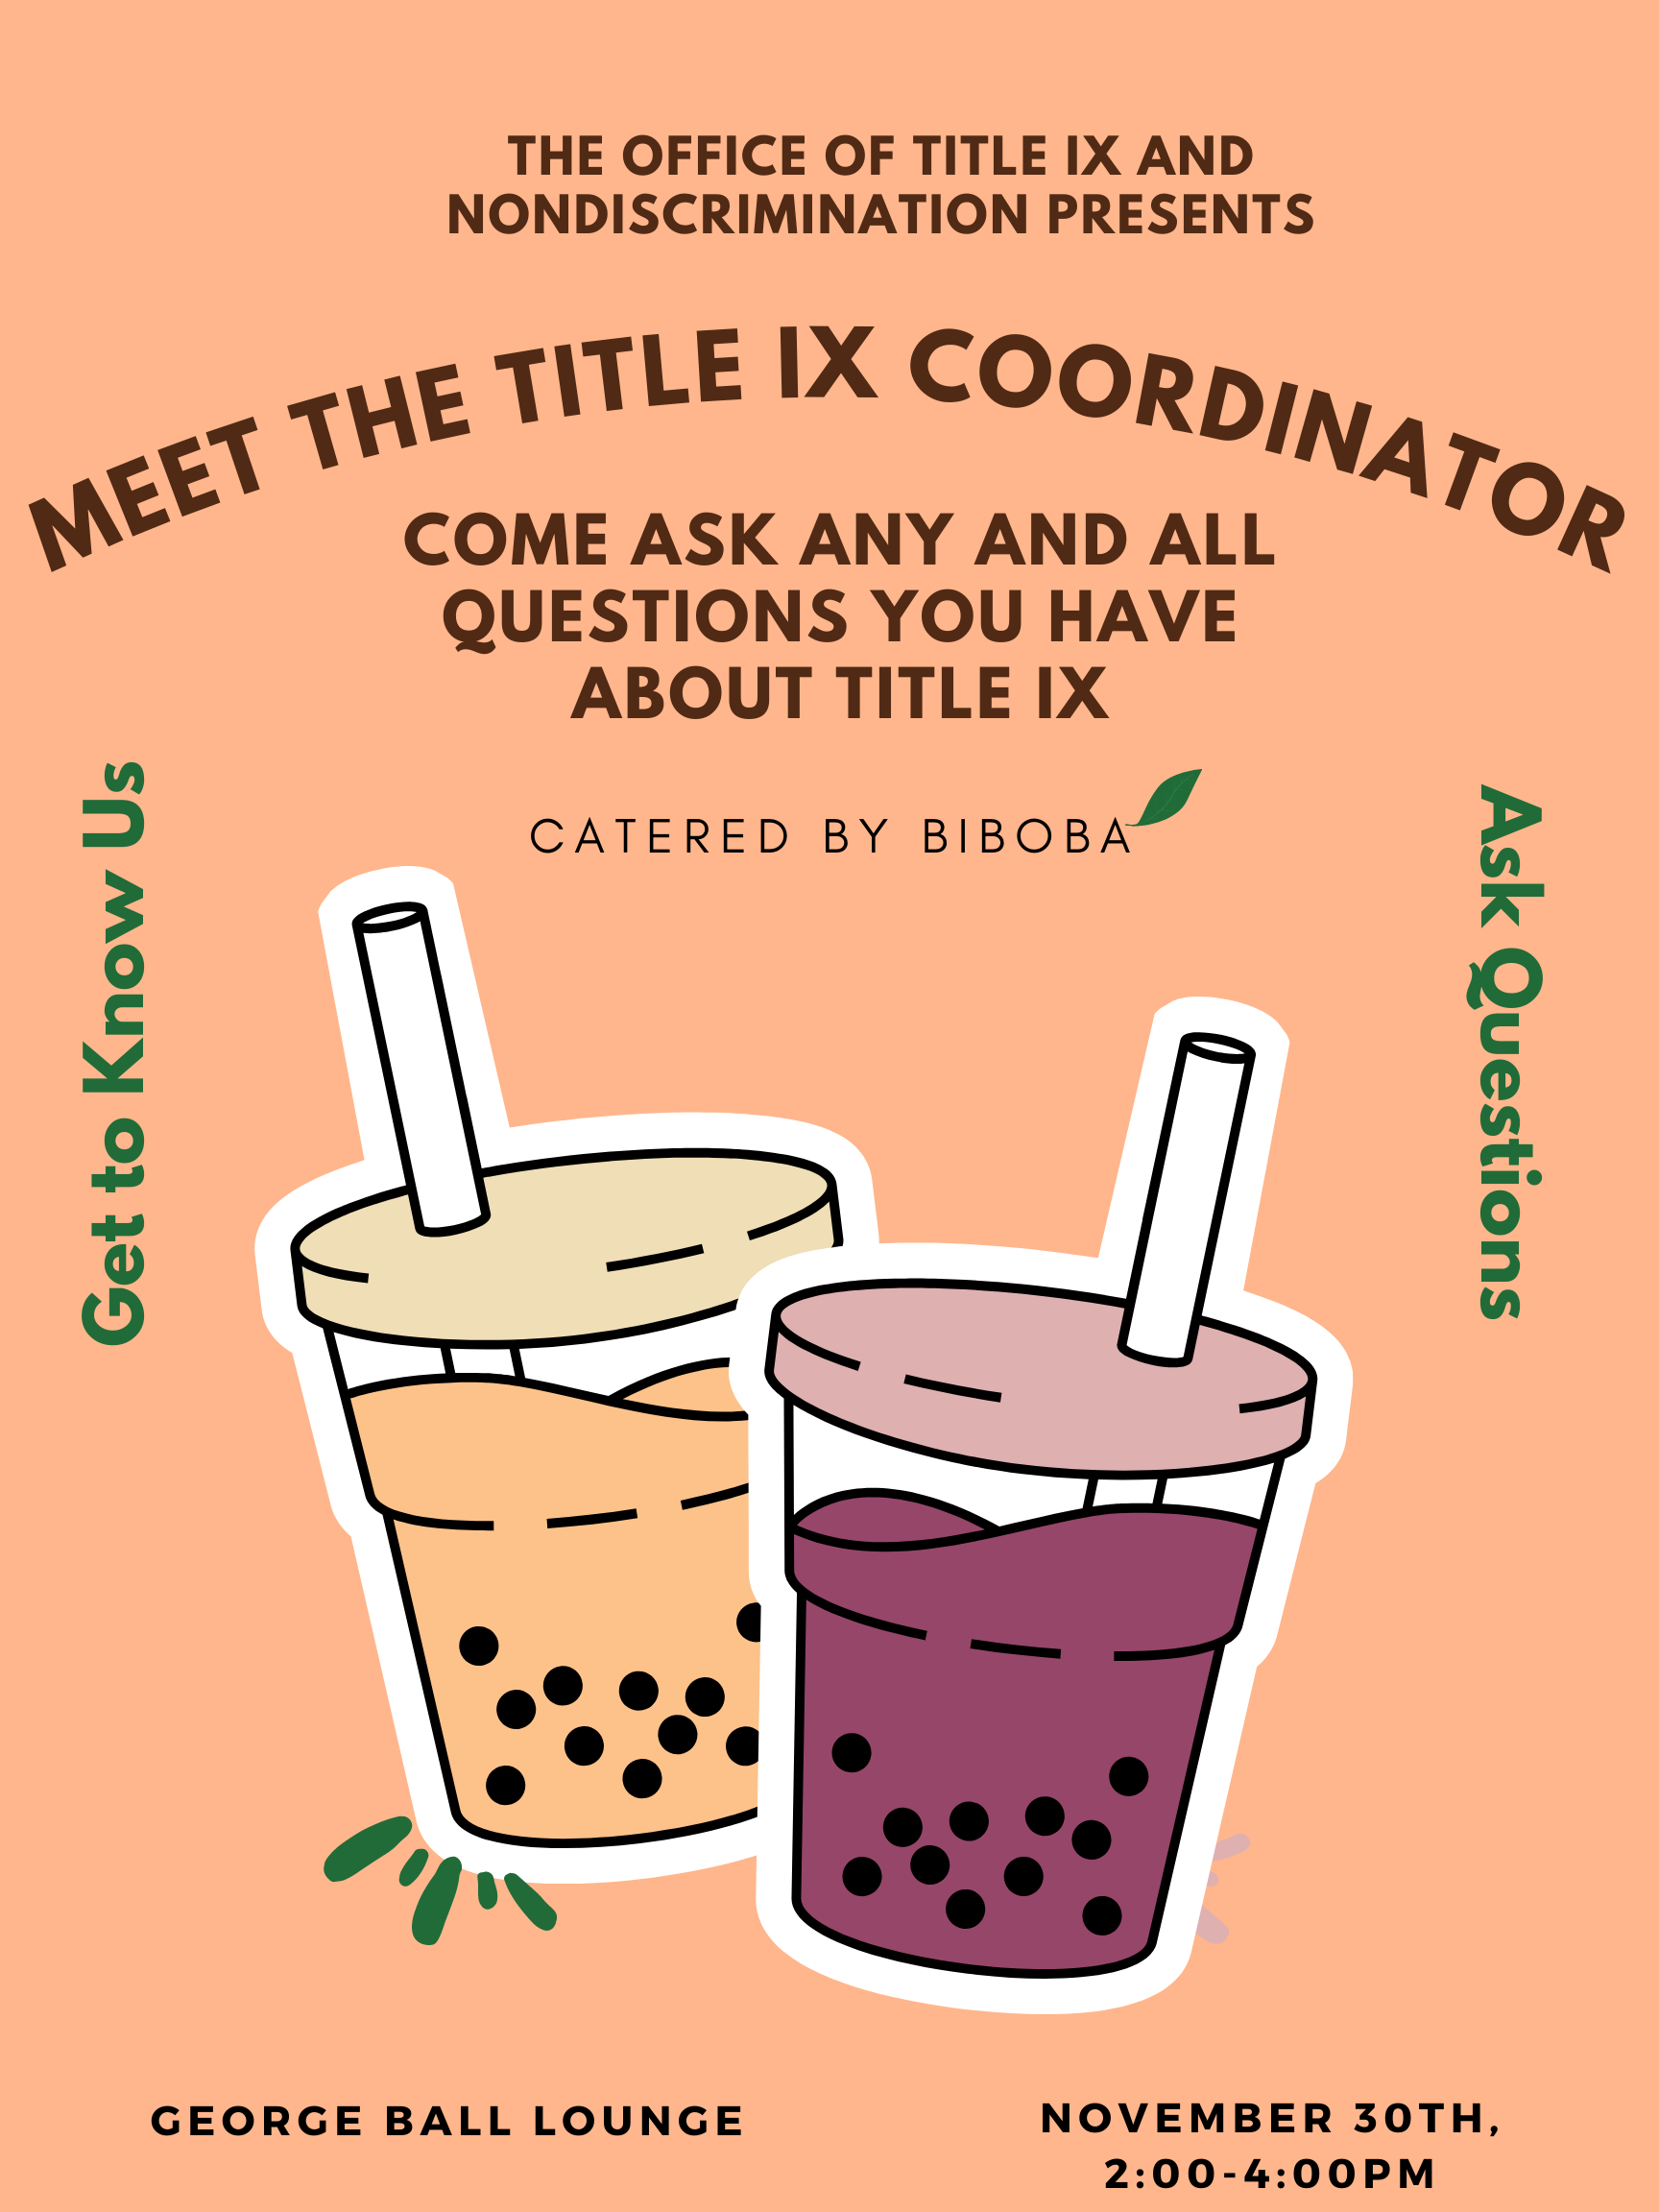 Meet the Title IX Coordinator